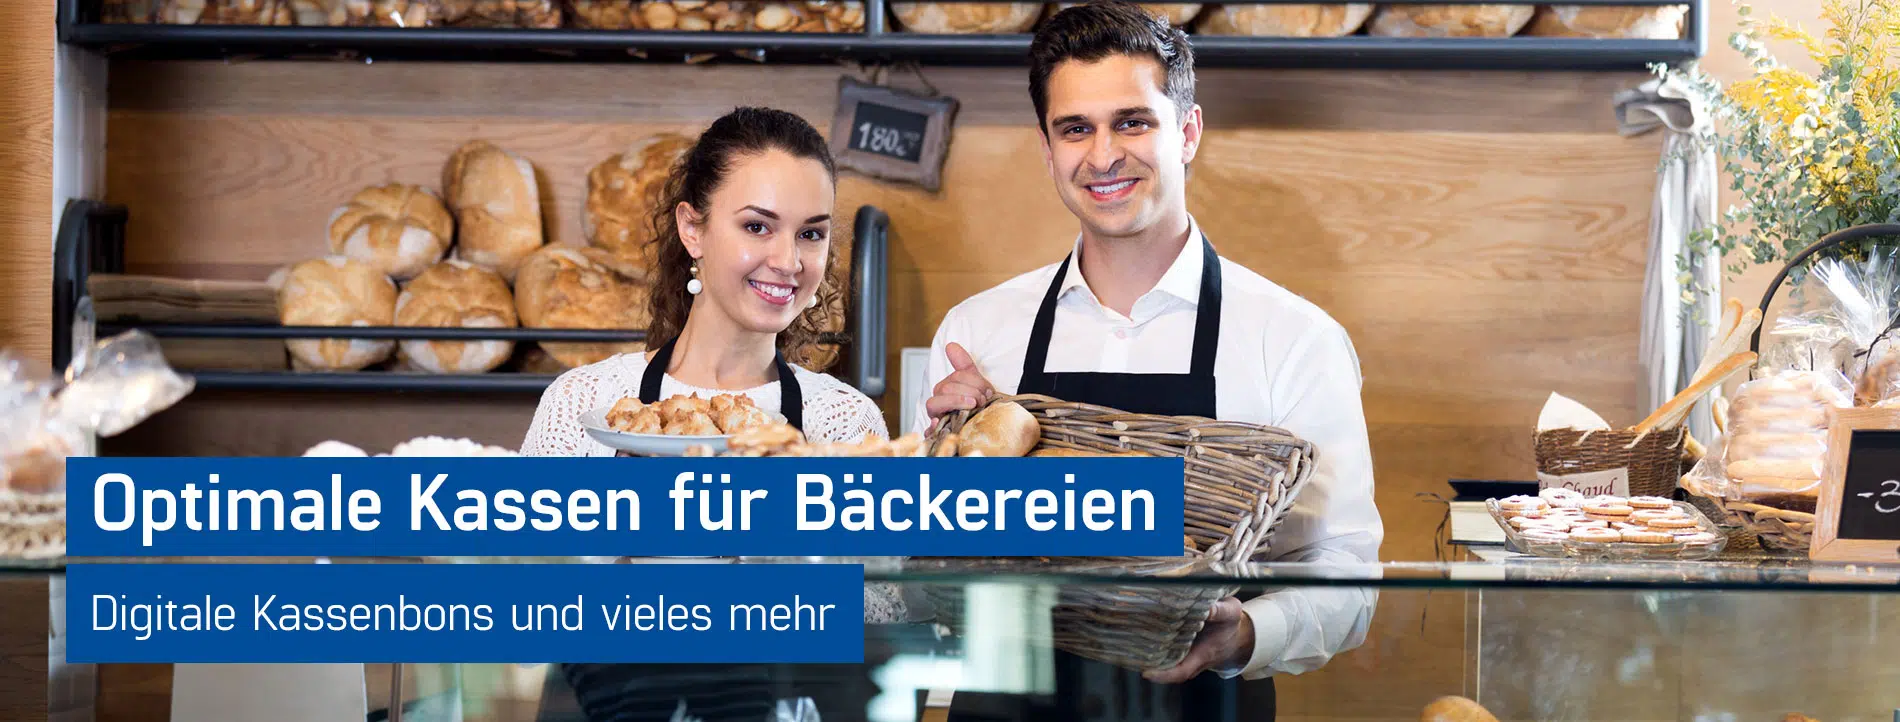 Fröhliche Bäcker präsentieren Backwaren und freuen sich über die tollen Kassensysteme für Bäckereien von GastroSoft